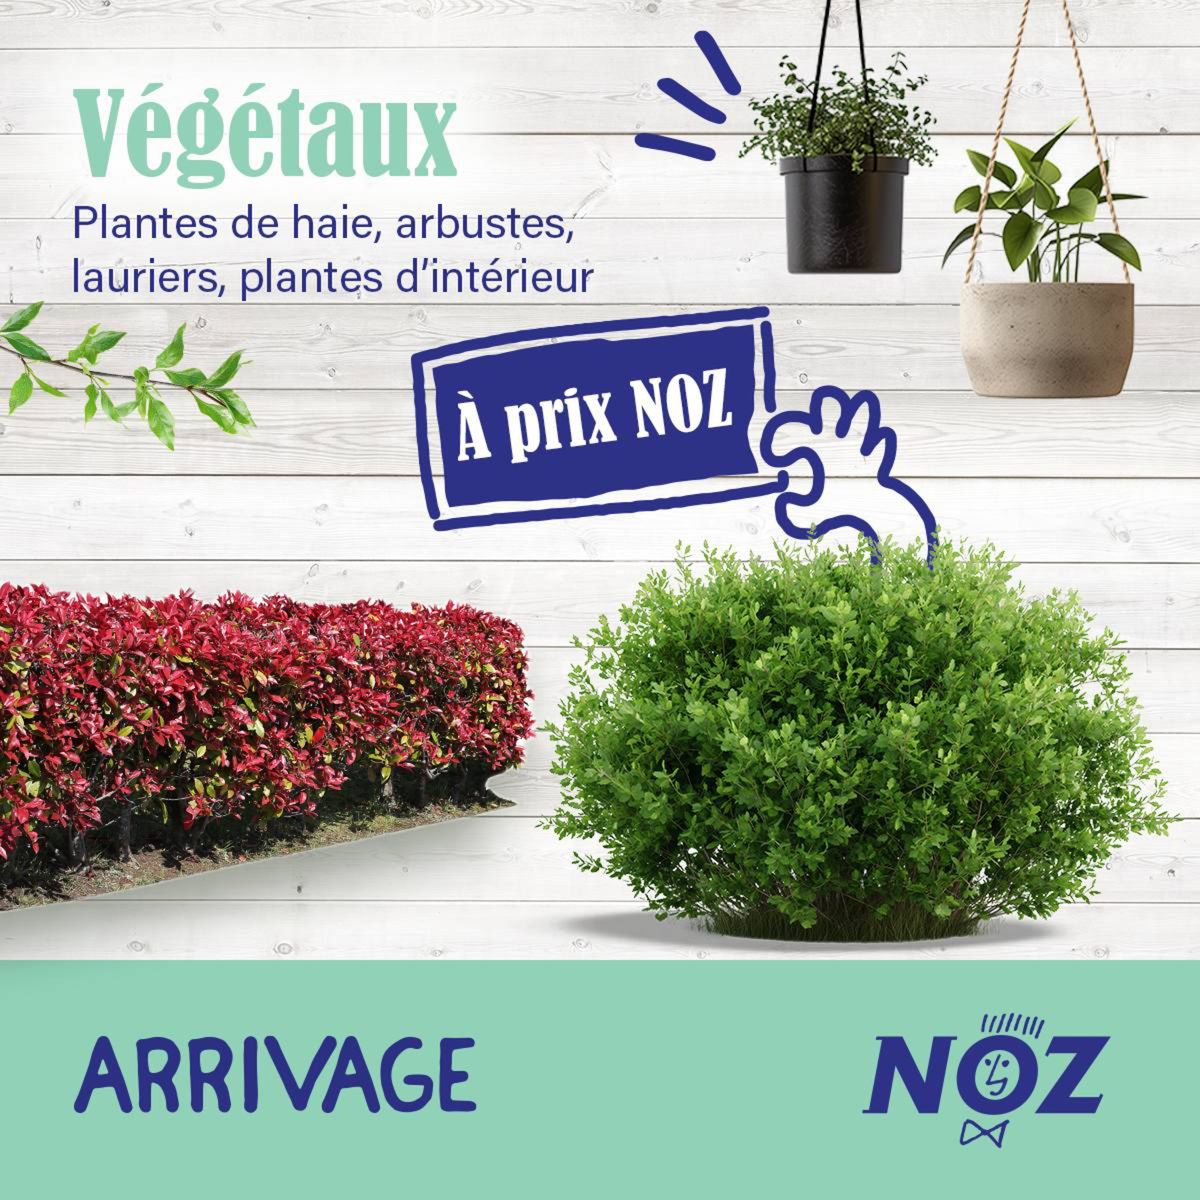 Catalogue Plantes de haie, arbustes, lauriers et plantes d'intérieur sont à retrouver à prix NOZ !, page 00001